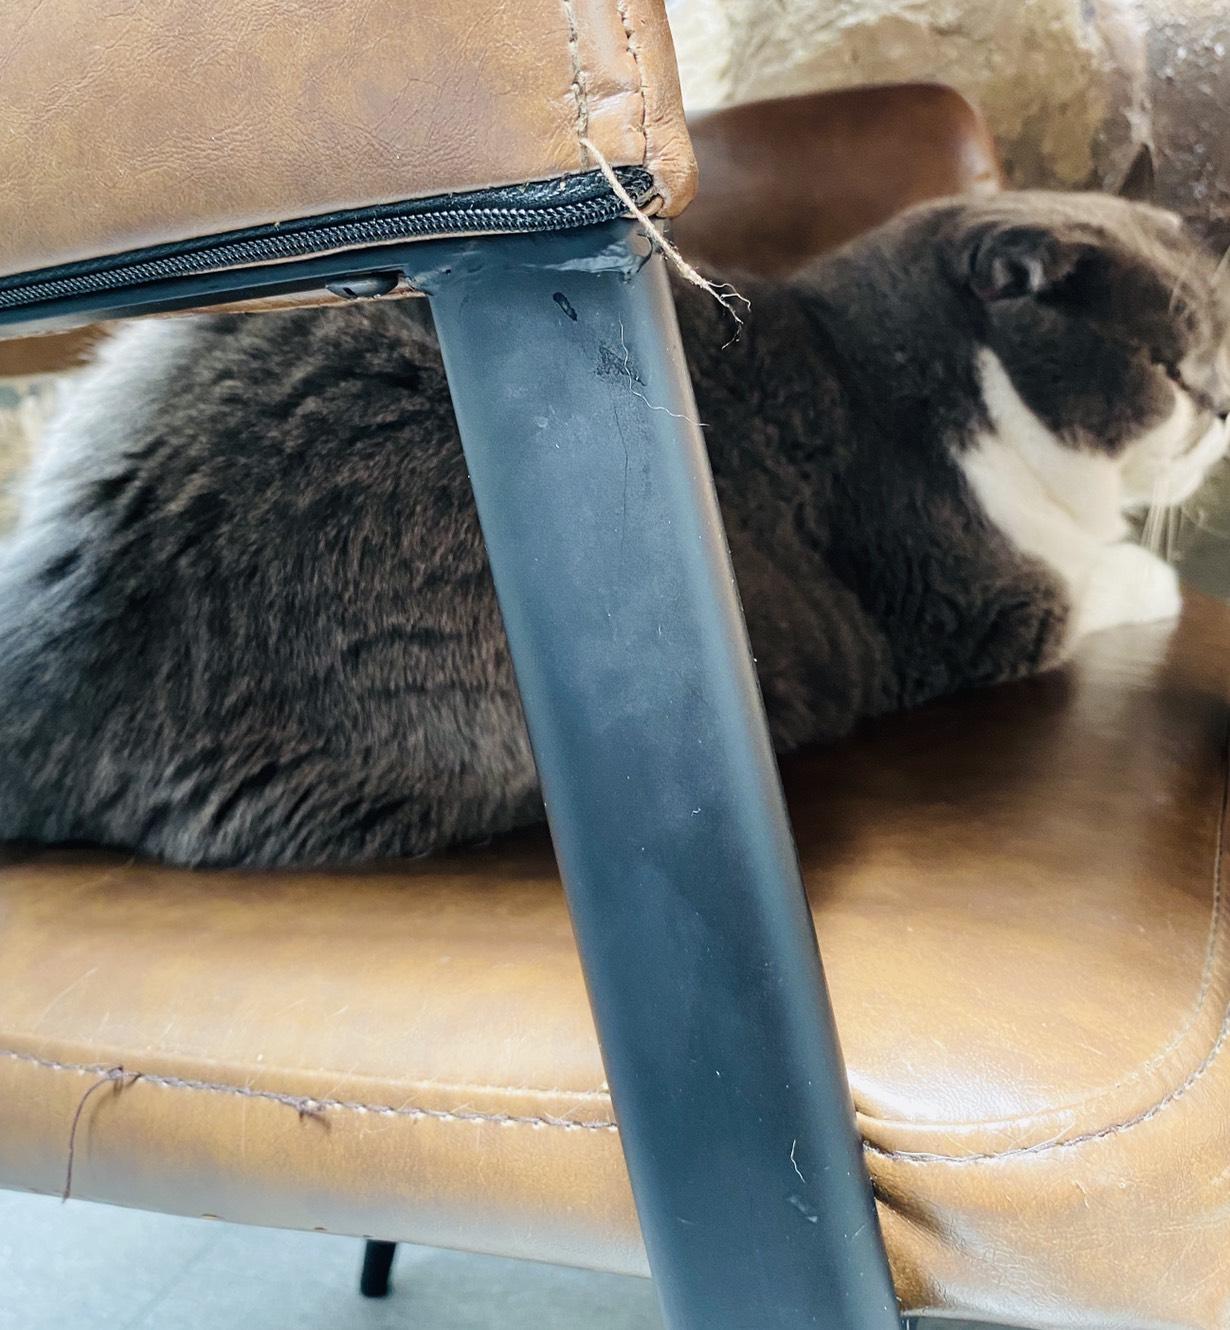 後來發現店貓窩在椅子上啊! 差點就一屁股坐下去